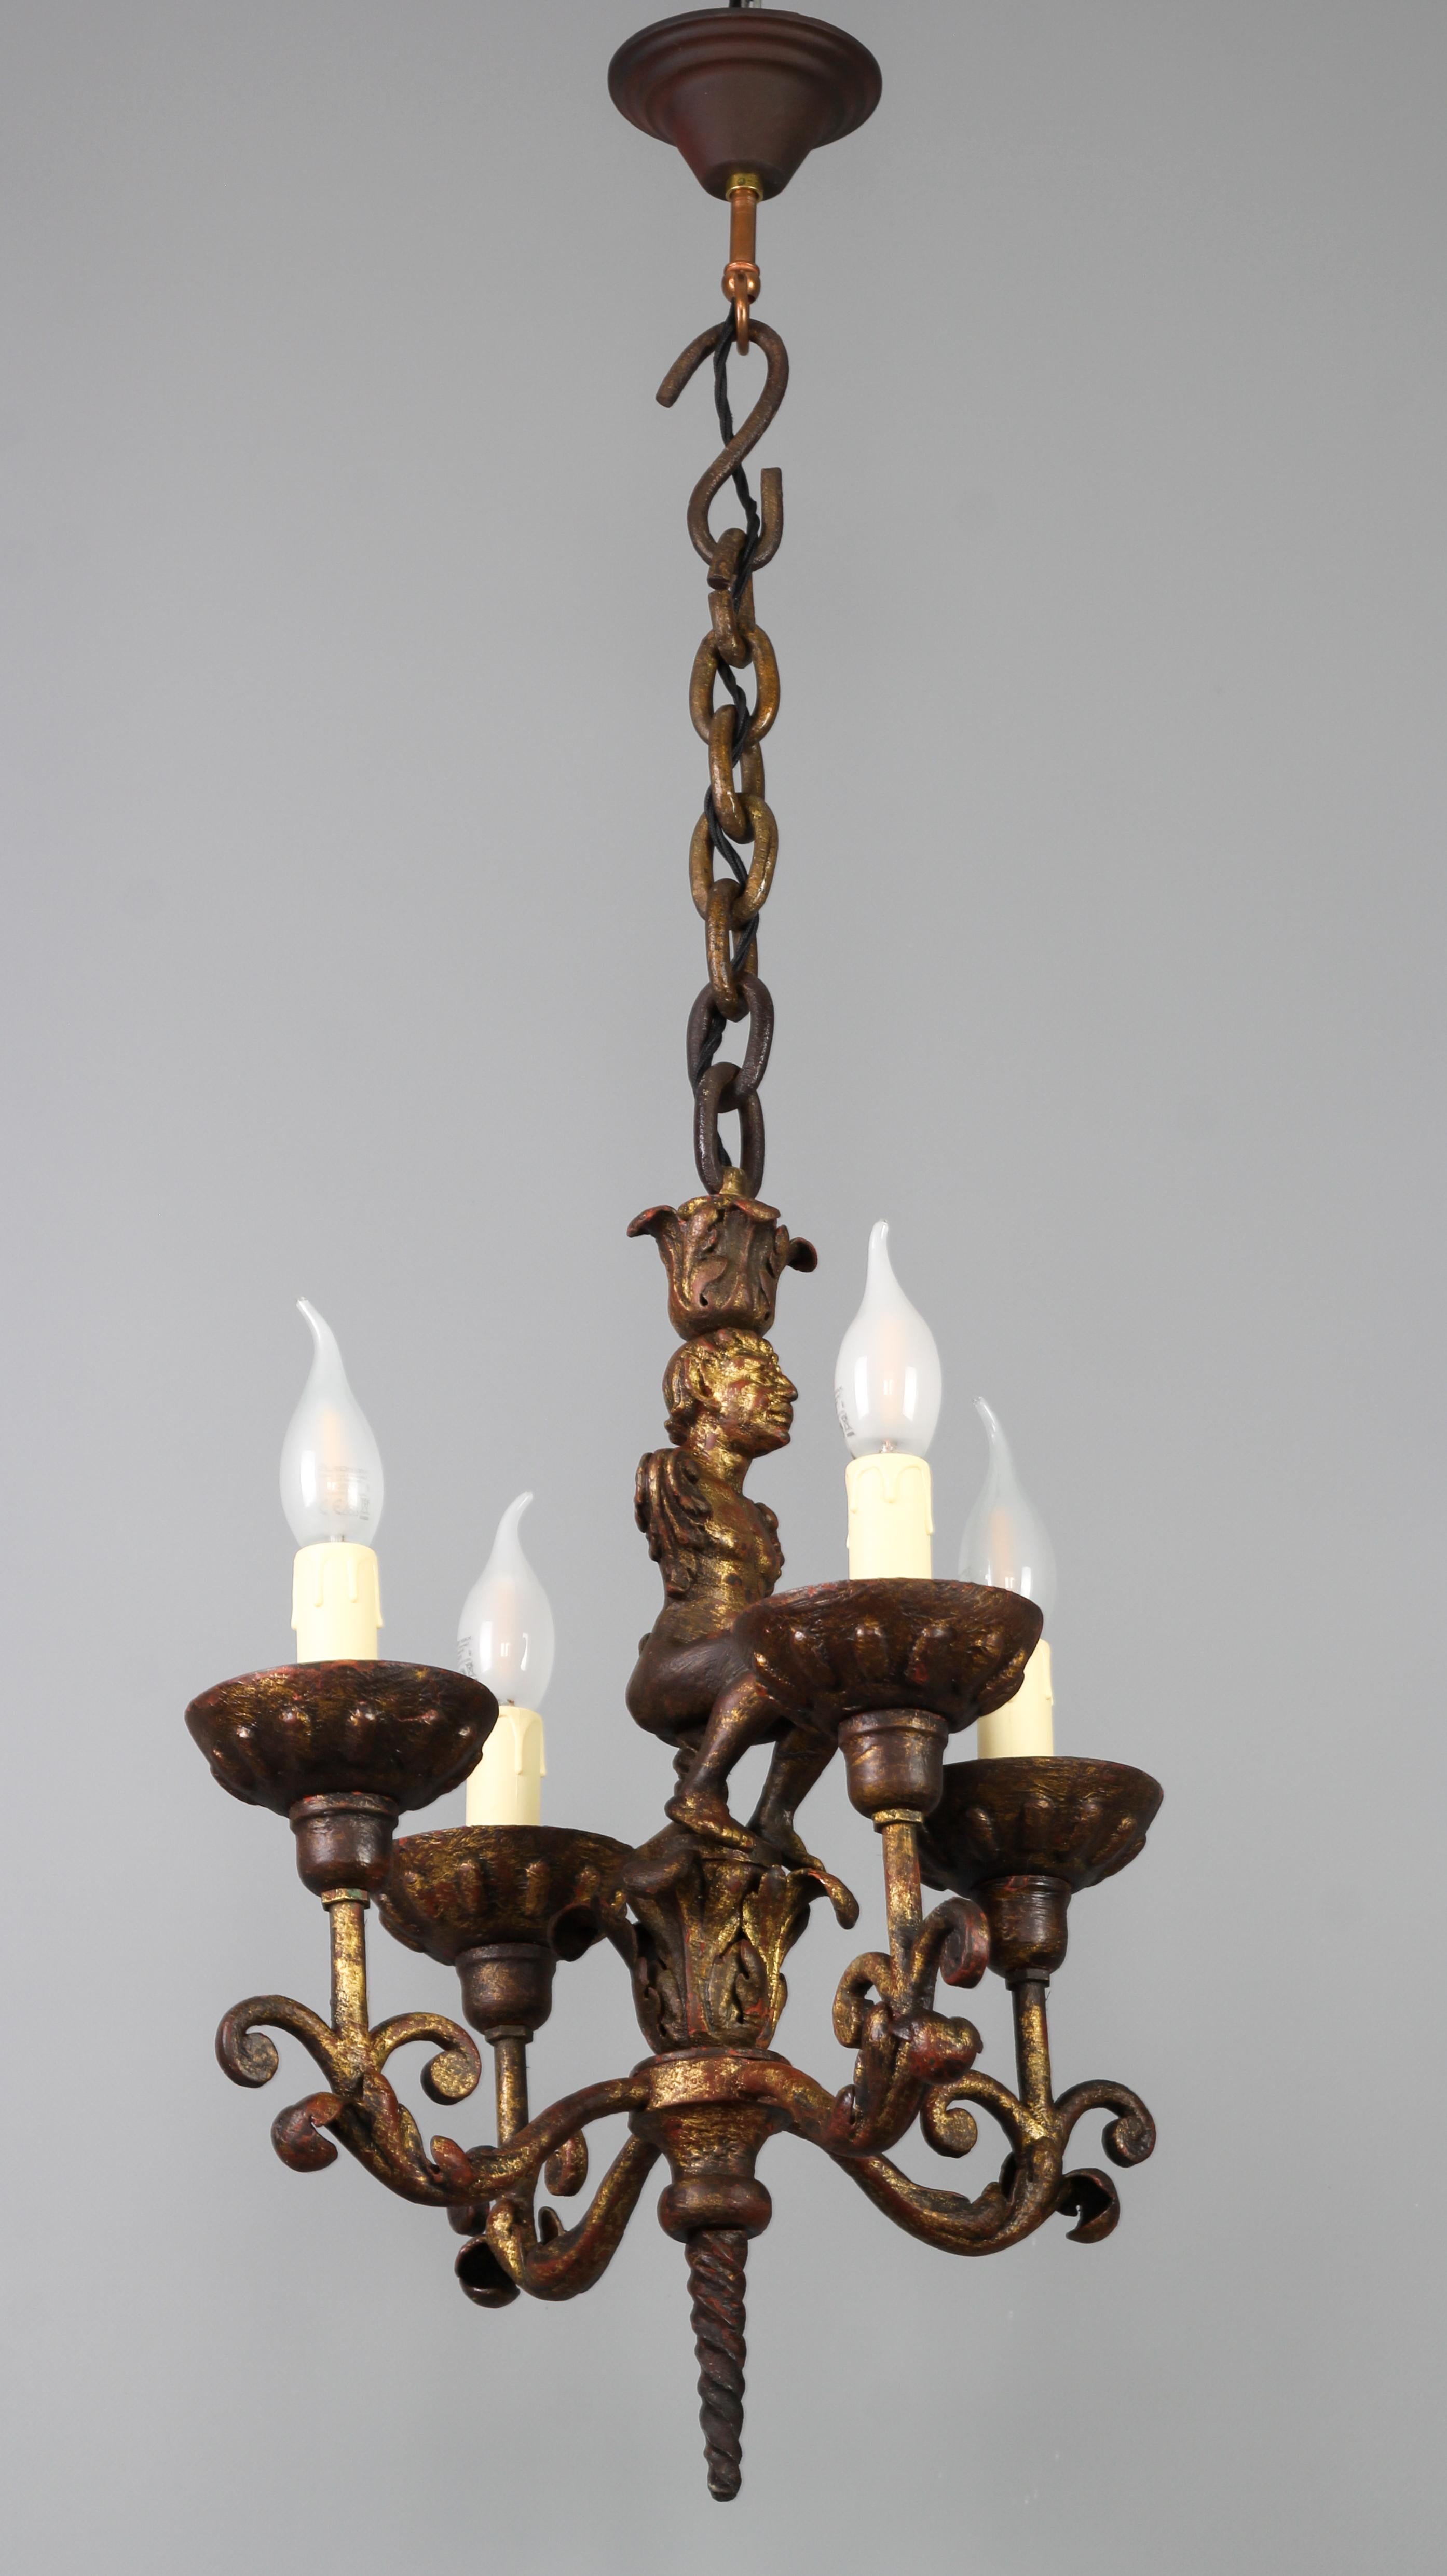 Antiker schmiedeeiserner vierflammiger figuraler Kronleuchter im Barockstil, Frankreich, Ende 19. Früher ein Kerzenleuchter, wurde er im 20. Jahrhundert elektrifiziert.
Dieser einzigartige und beeindruckende, in Gold und Rot patinierte,